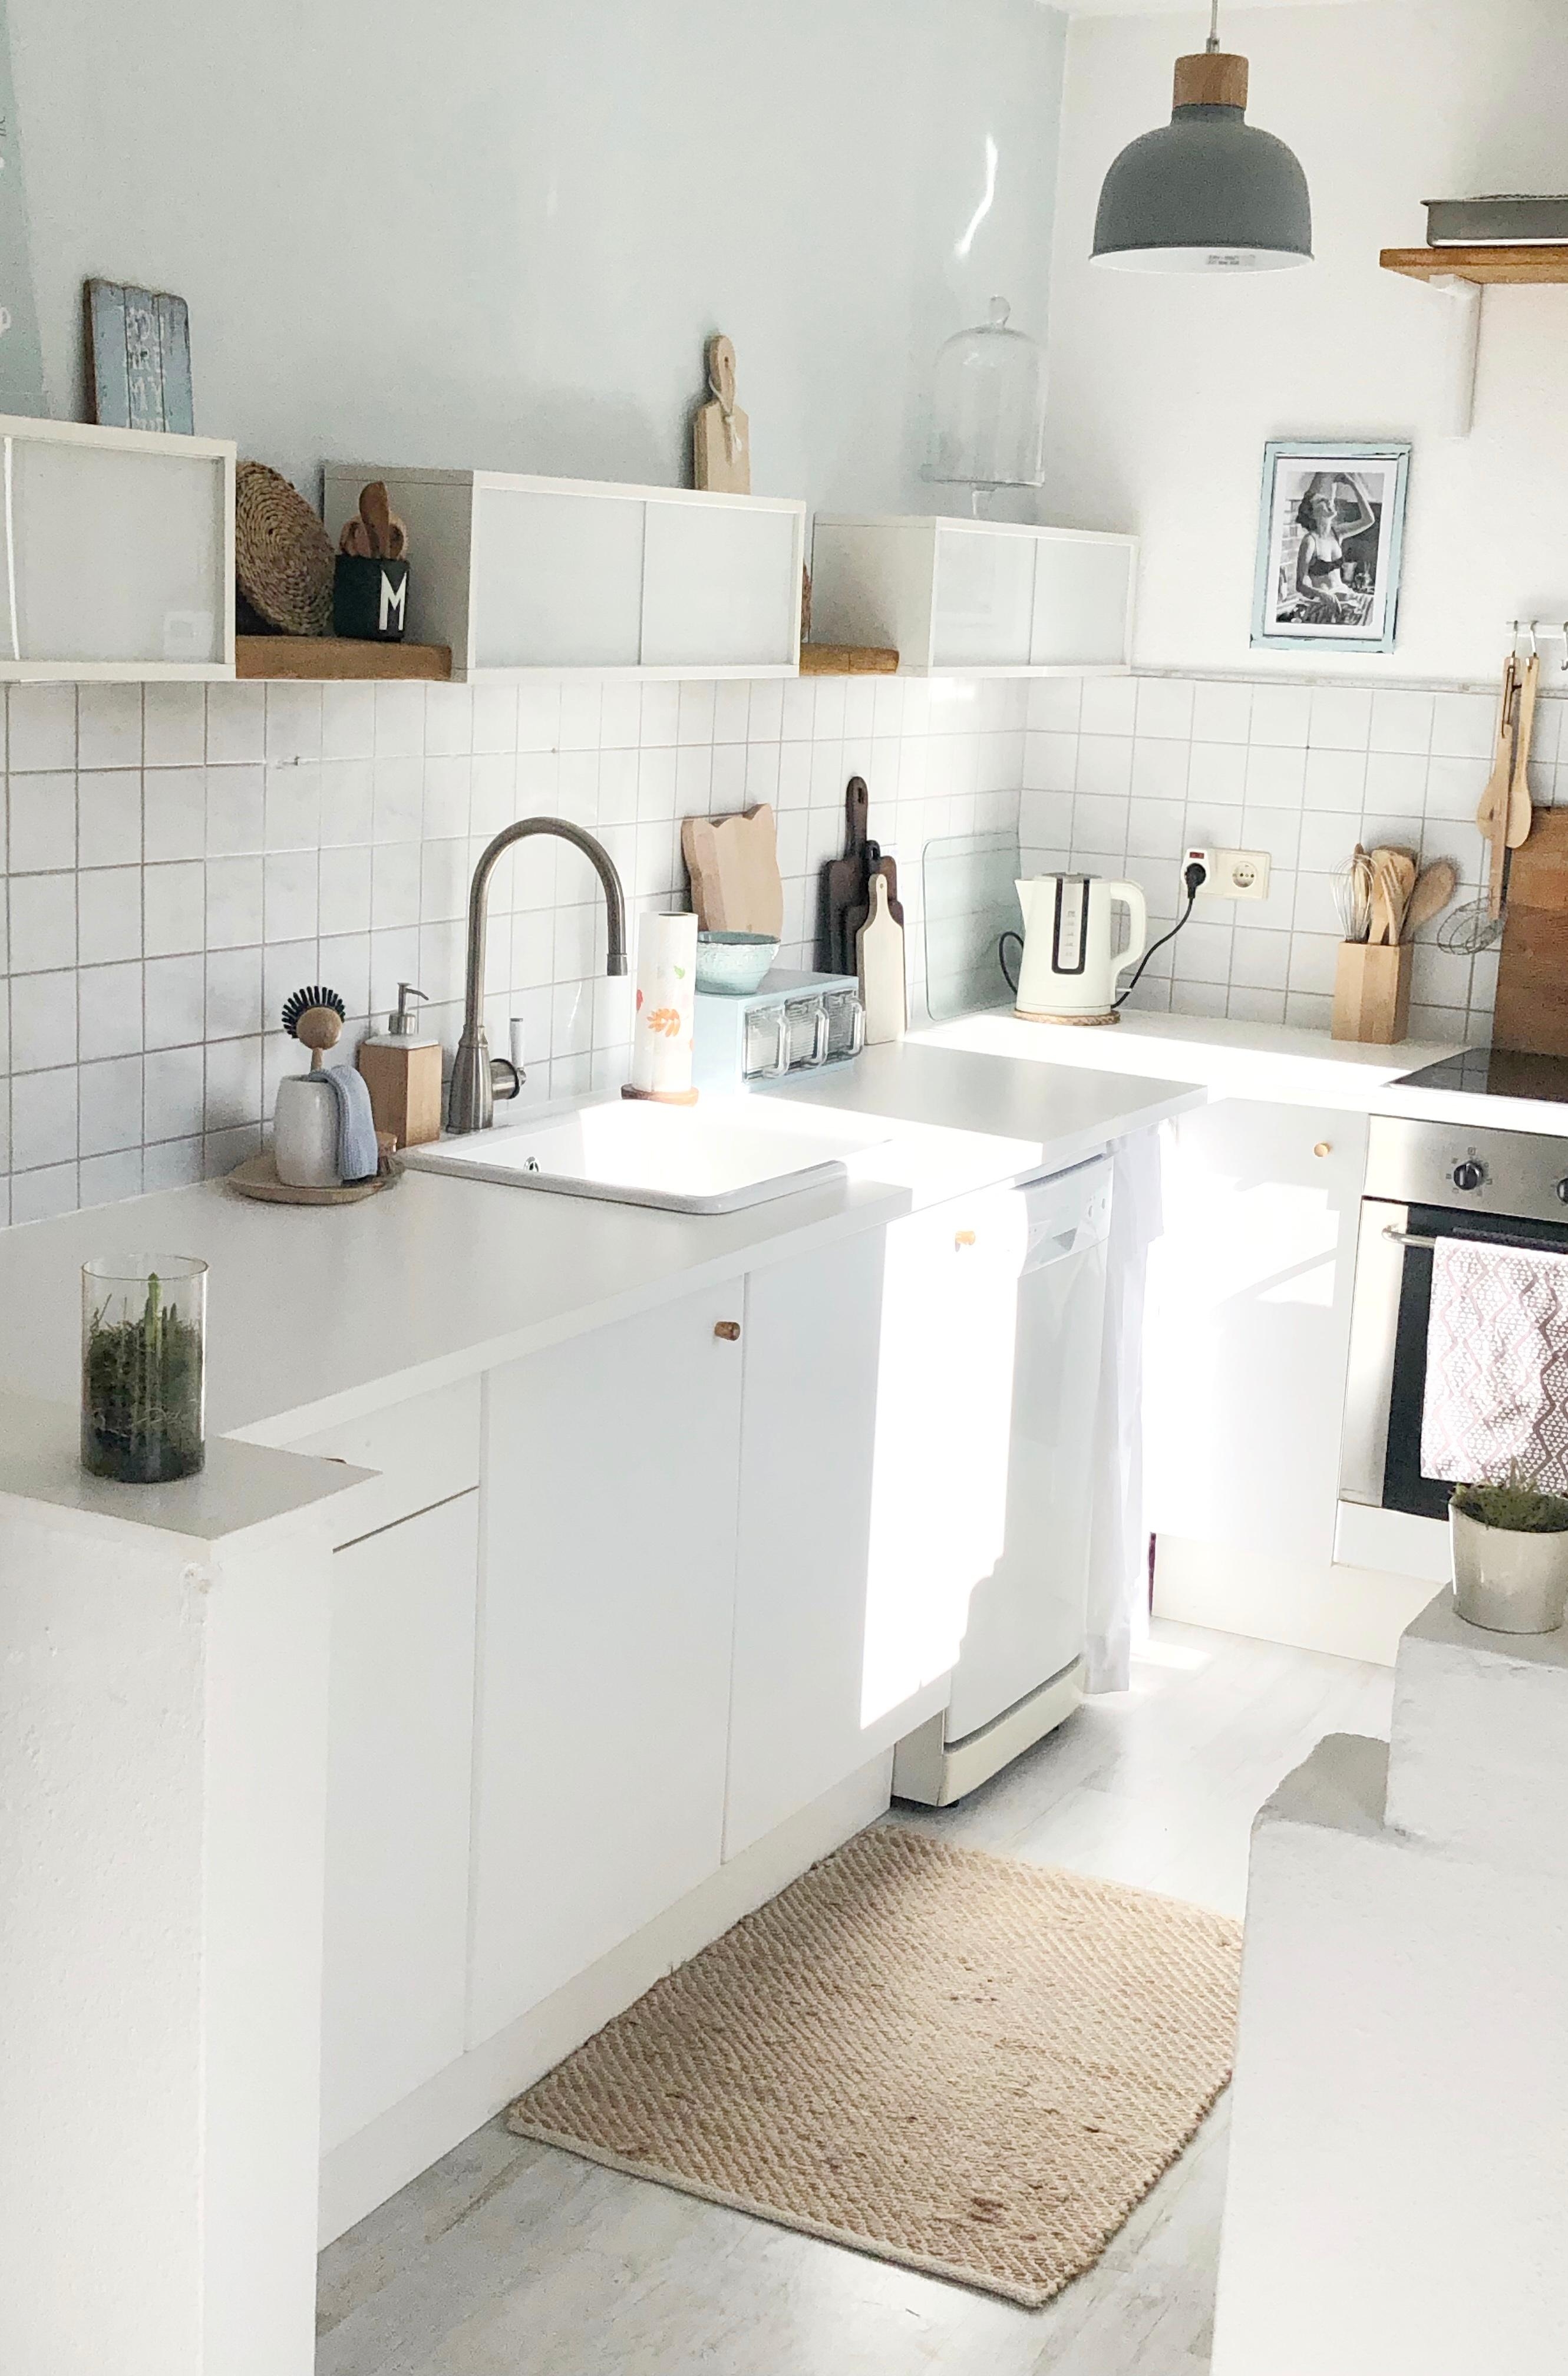 Kitchenlove 
#kitchen#whitekitchen#myhomestyle#solebich#couchstyle